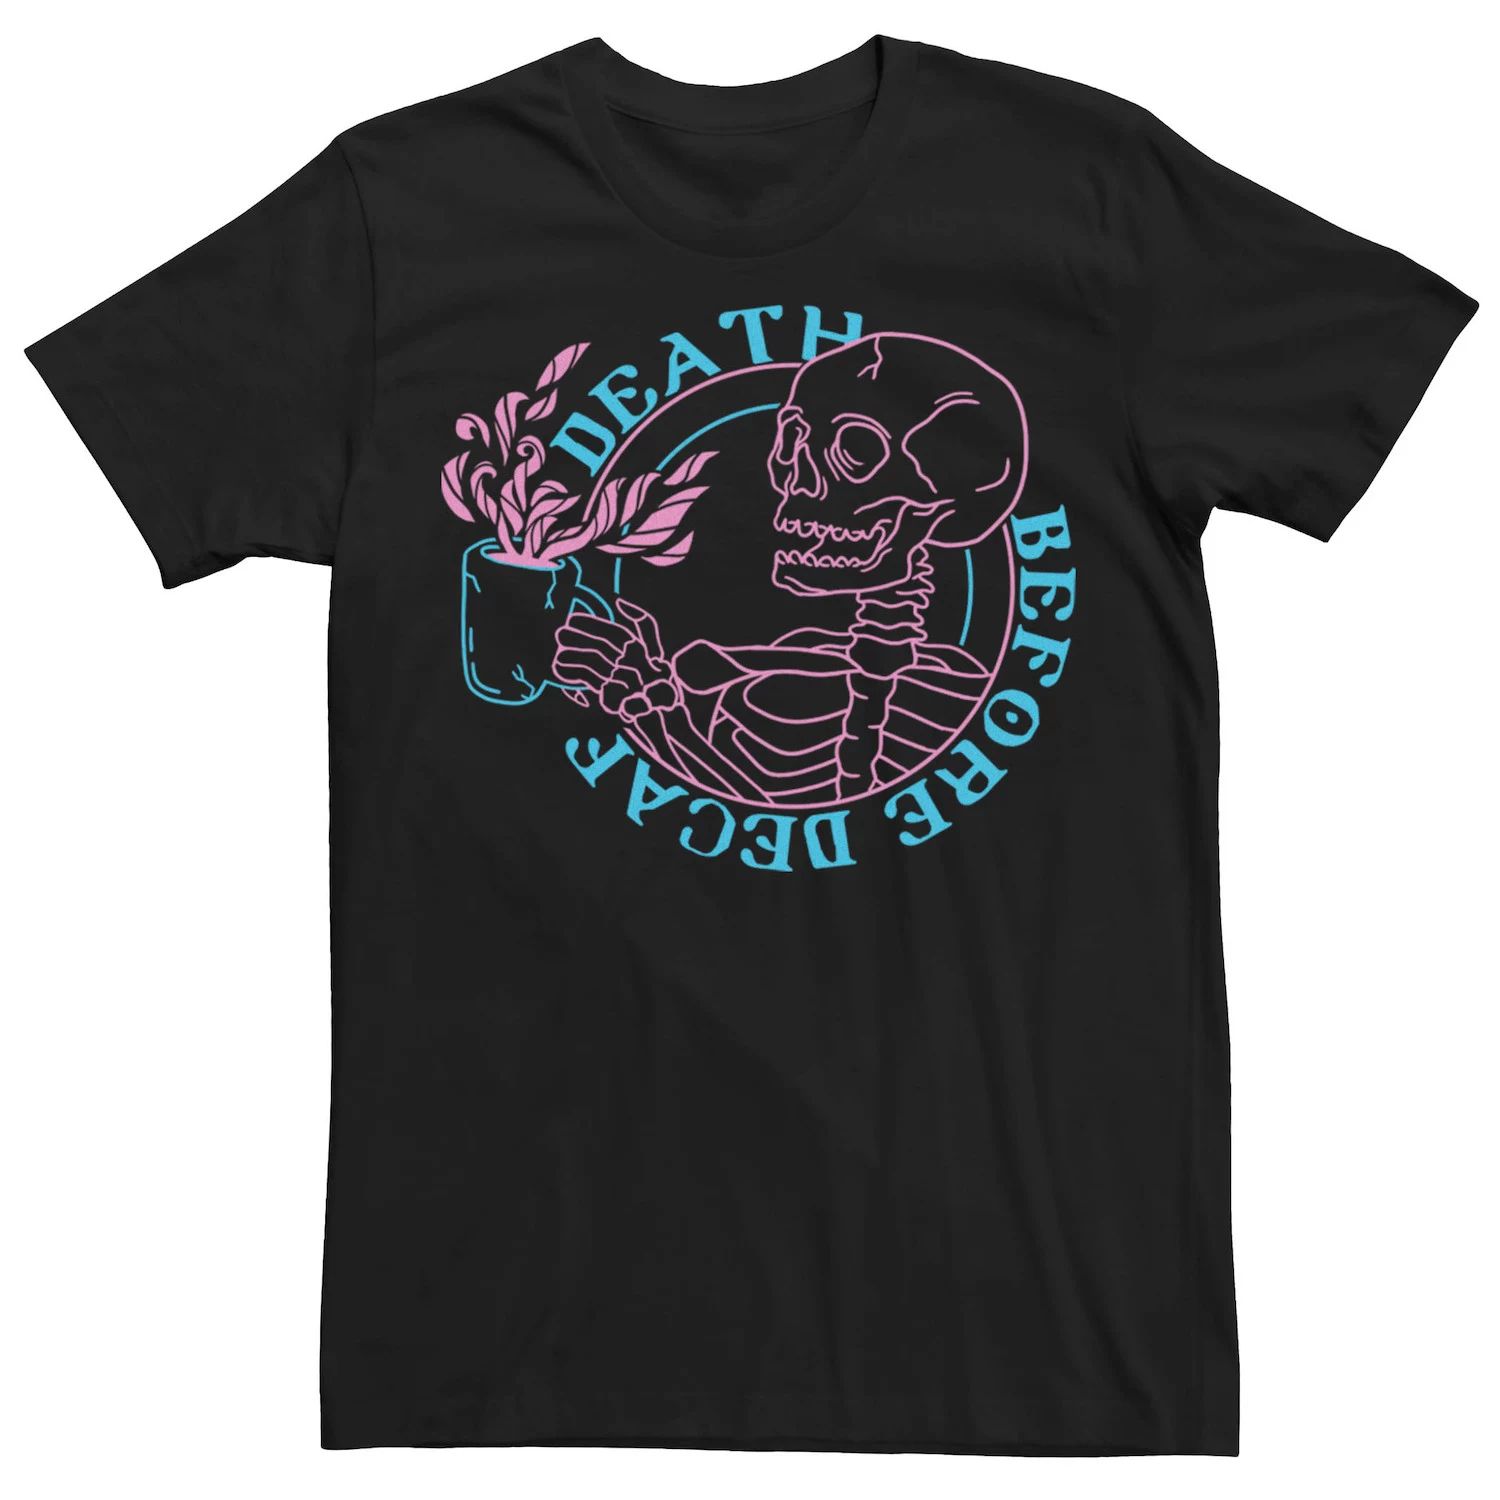 Мужская футболка Death Before Decaf с неоновым скелетом Licensed Character printio футболка с полной запечаткой мужская starbucks death before decaf